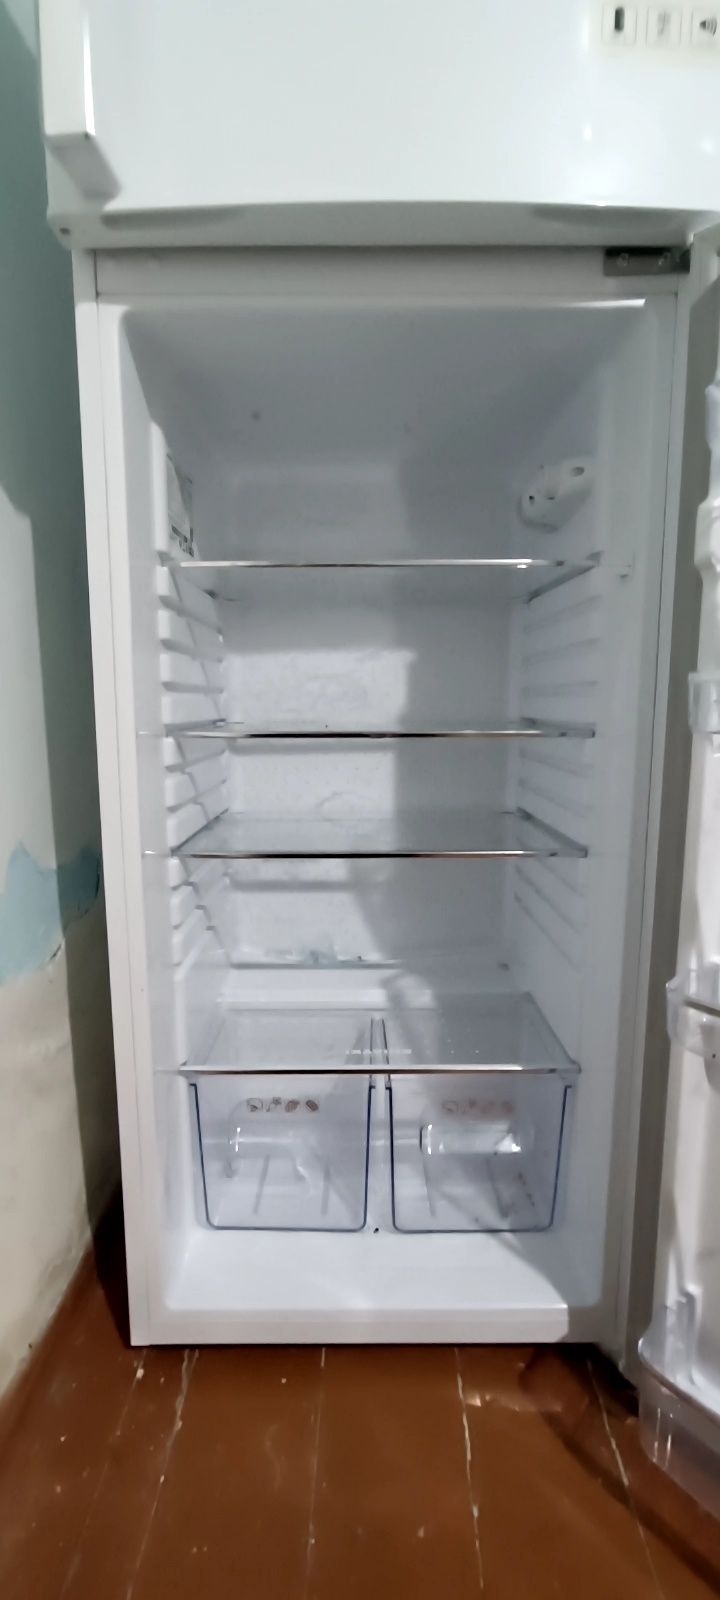 Продаётся холодильник shivaki